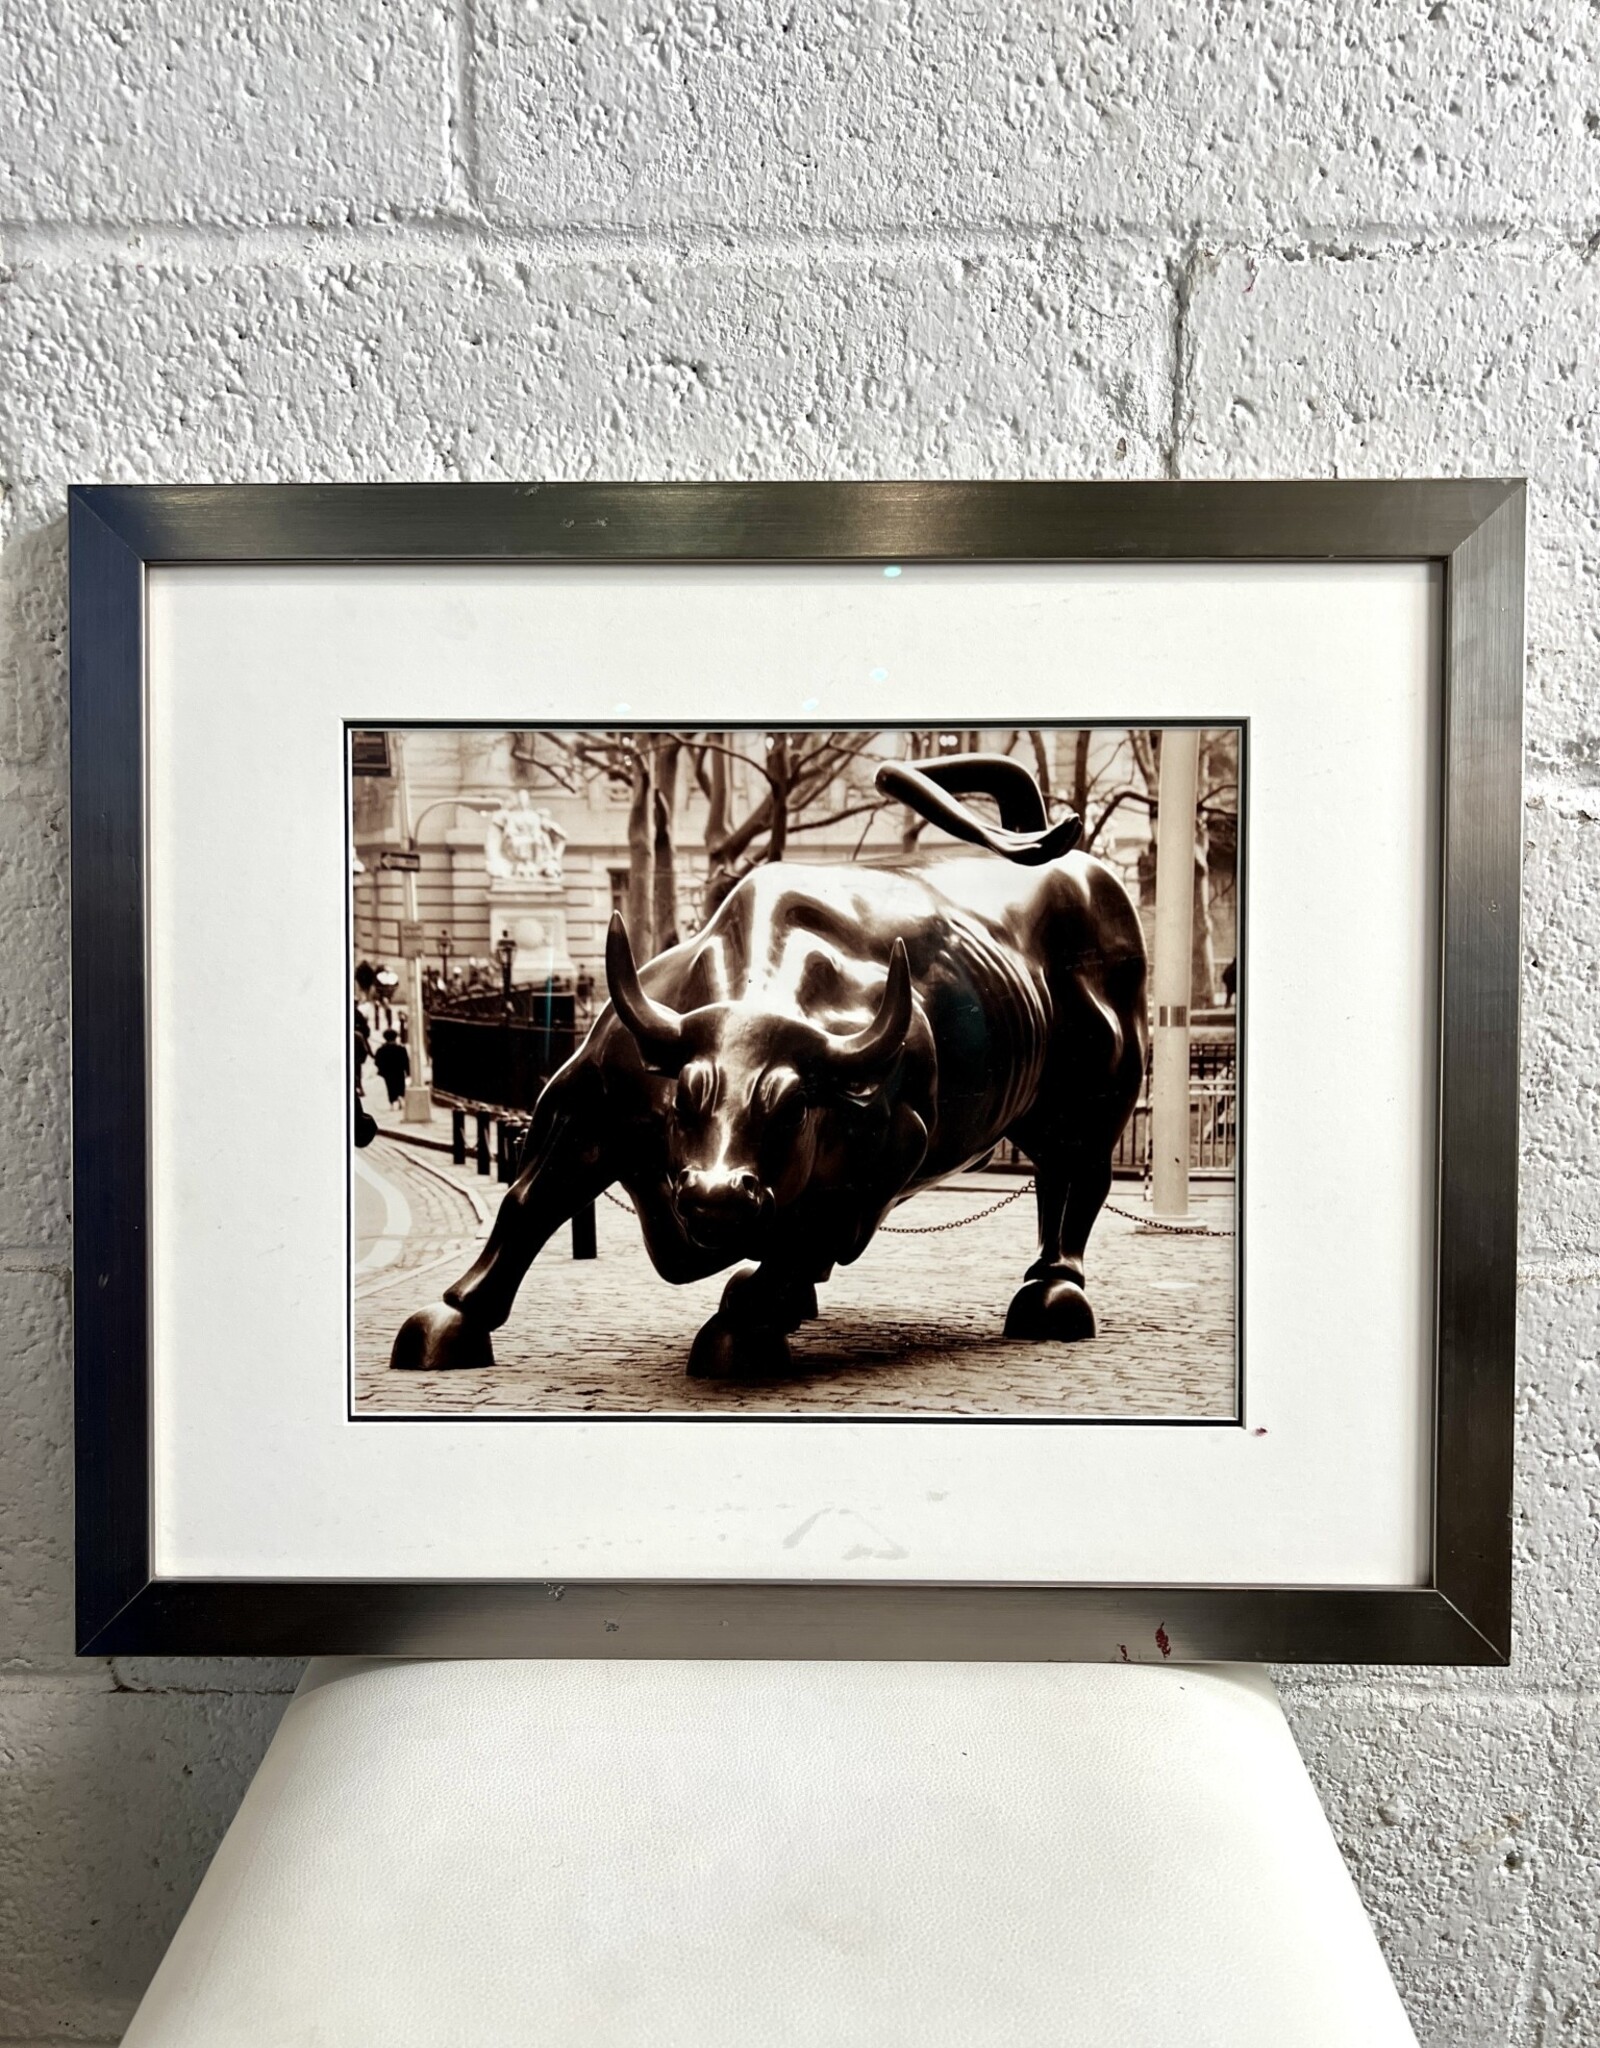 Charging Bull, framed photograph